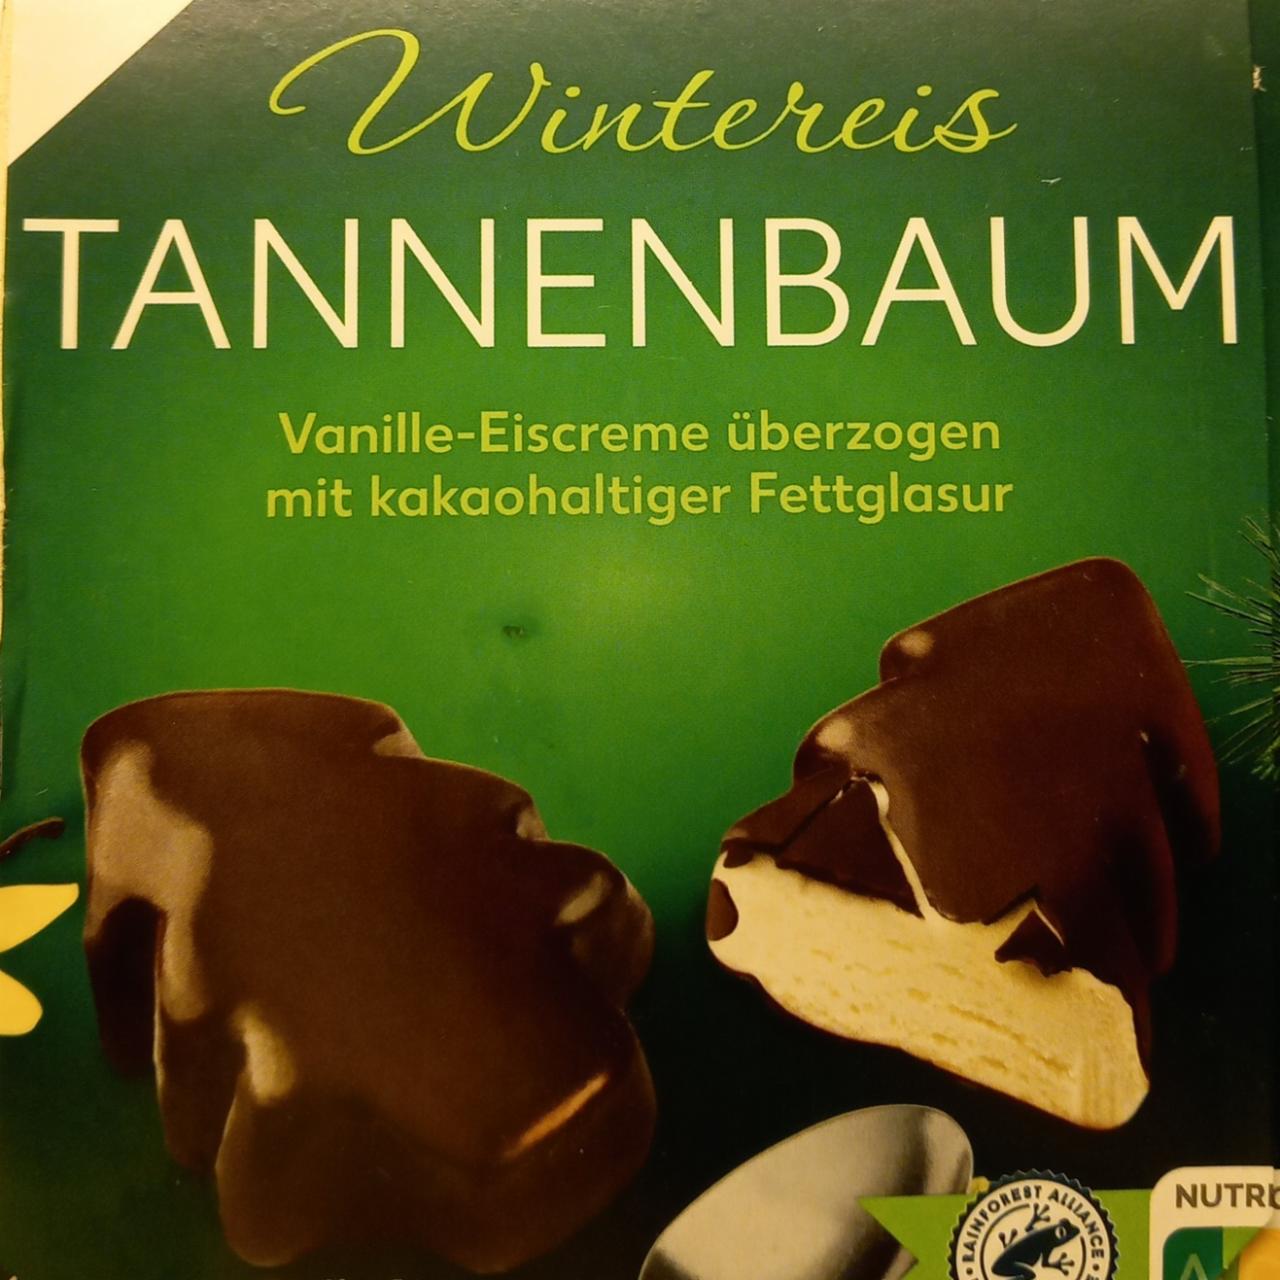 Fotografie - Wintereis Tannenbaum Vanille-Eiscreme überzogen mit kakaohaltiger fettglasur K-Classic